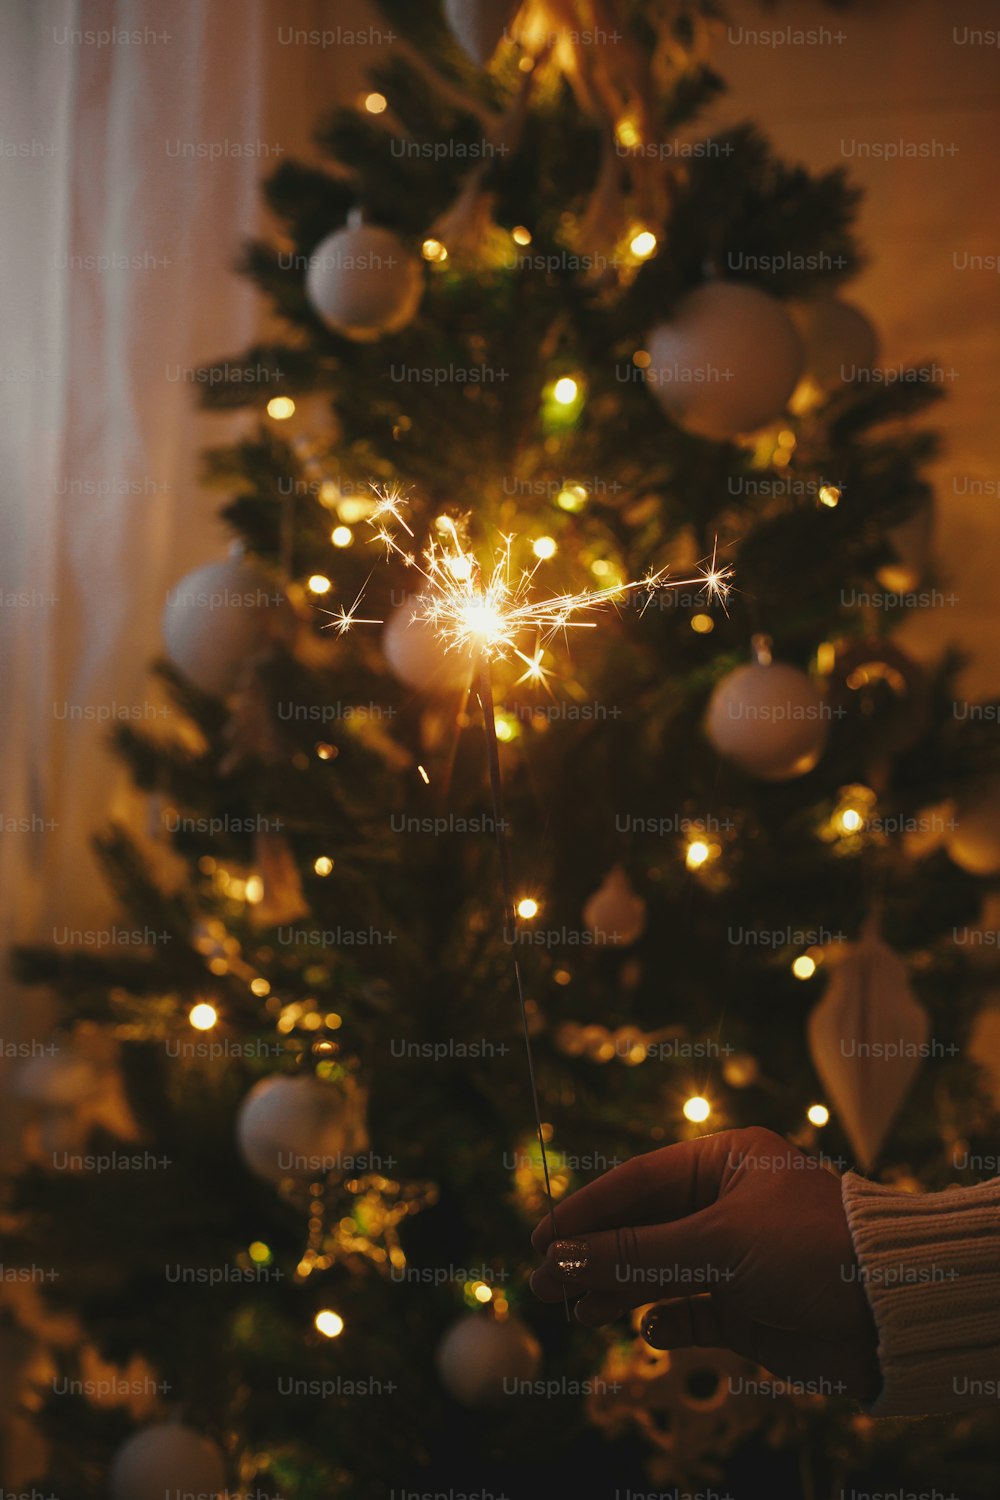 Hand hält eine brennende Wunderkerze auf dem Hintergrund von Weihnachtsbaumlichtern in festlichen dunklen Raum. Frohes neues Jahr!! Feuerwerk bengalisch glüht in Frauenhand. Platz für Text. Atmosphärischer Moment